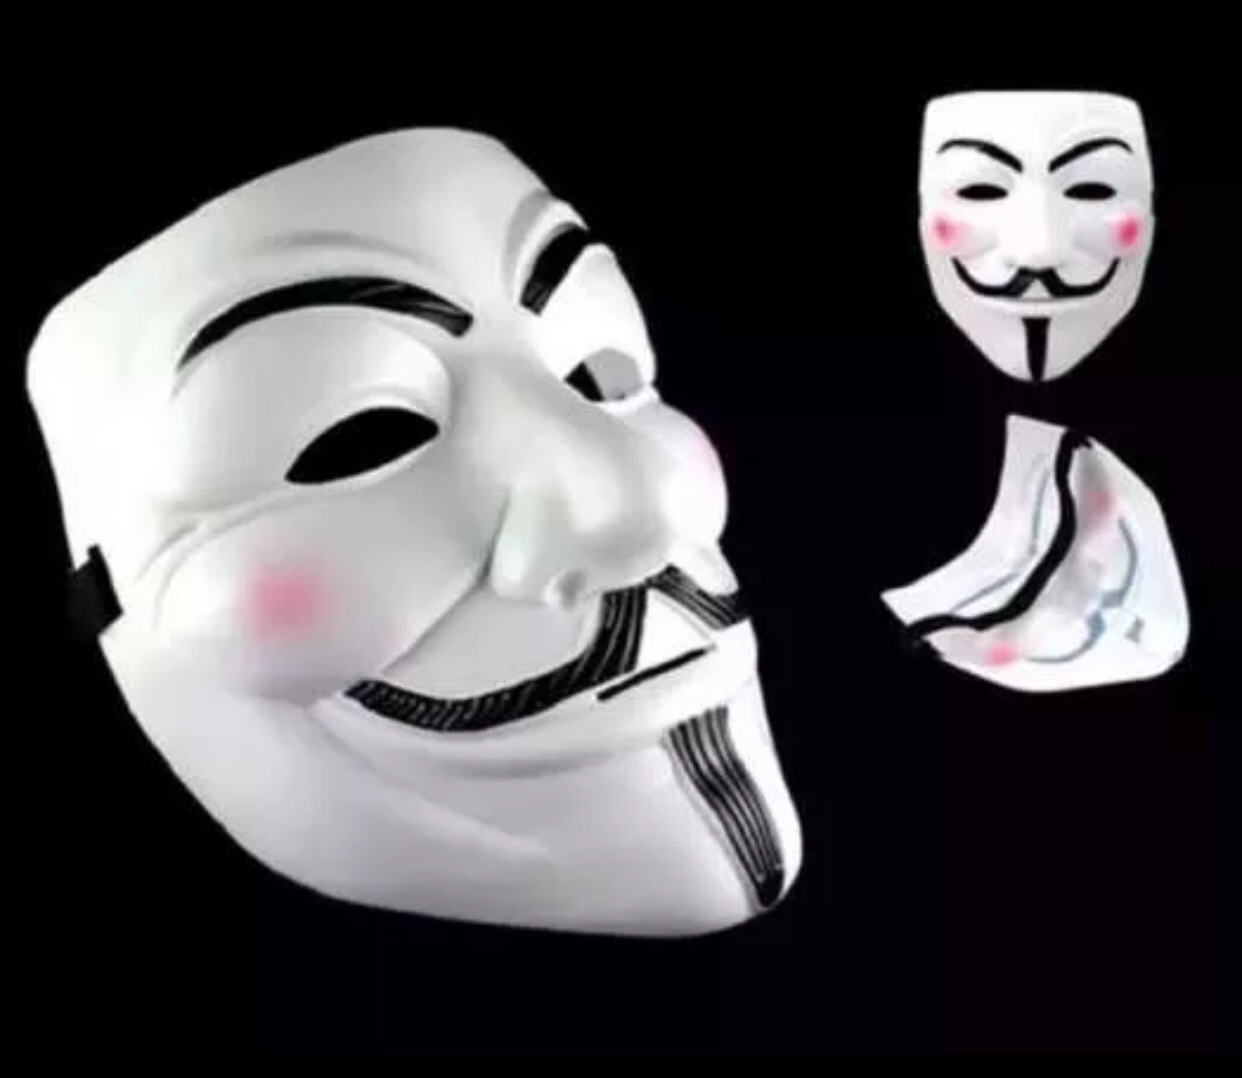 Mặt nạ Hacker - Anonymous hóa trang Trung thu